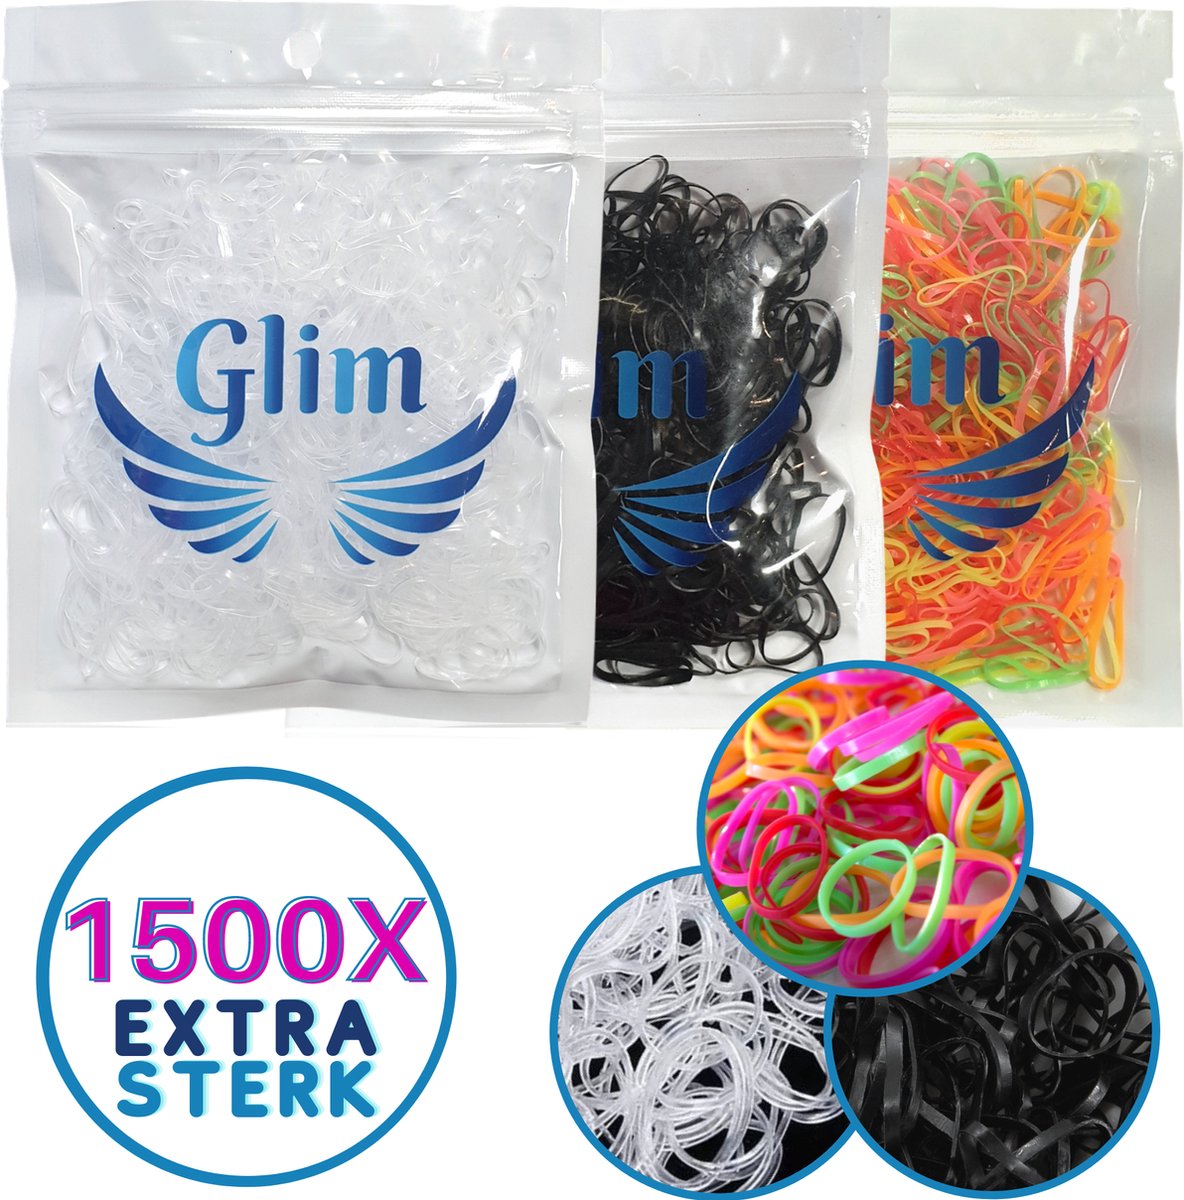 Glim® 1500x mini elastiekjes - Meisjes - Baby - Kinderen - Haar Elastieken - Elastiek - Extra Sterk - zwart + transparant + gekleurd